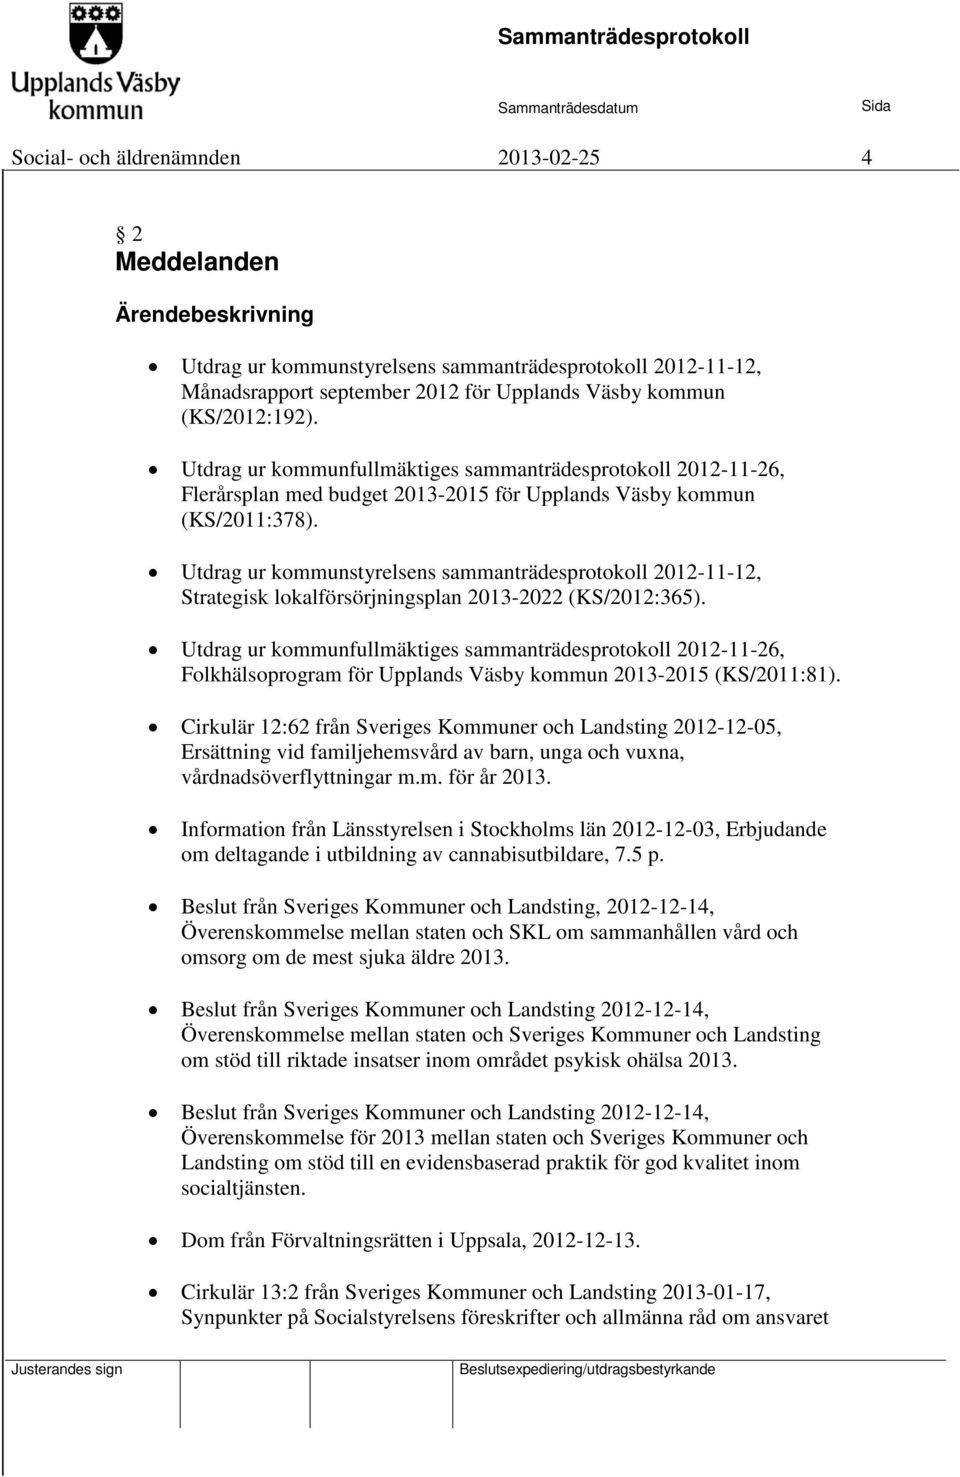 Utdrag ur kommunstyrelsens sammanträdesprotokoll 2012-11-12, Strategisk lokalförsörjningsplan 2013-2022 (KS/2012:365).